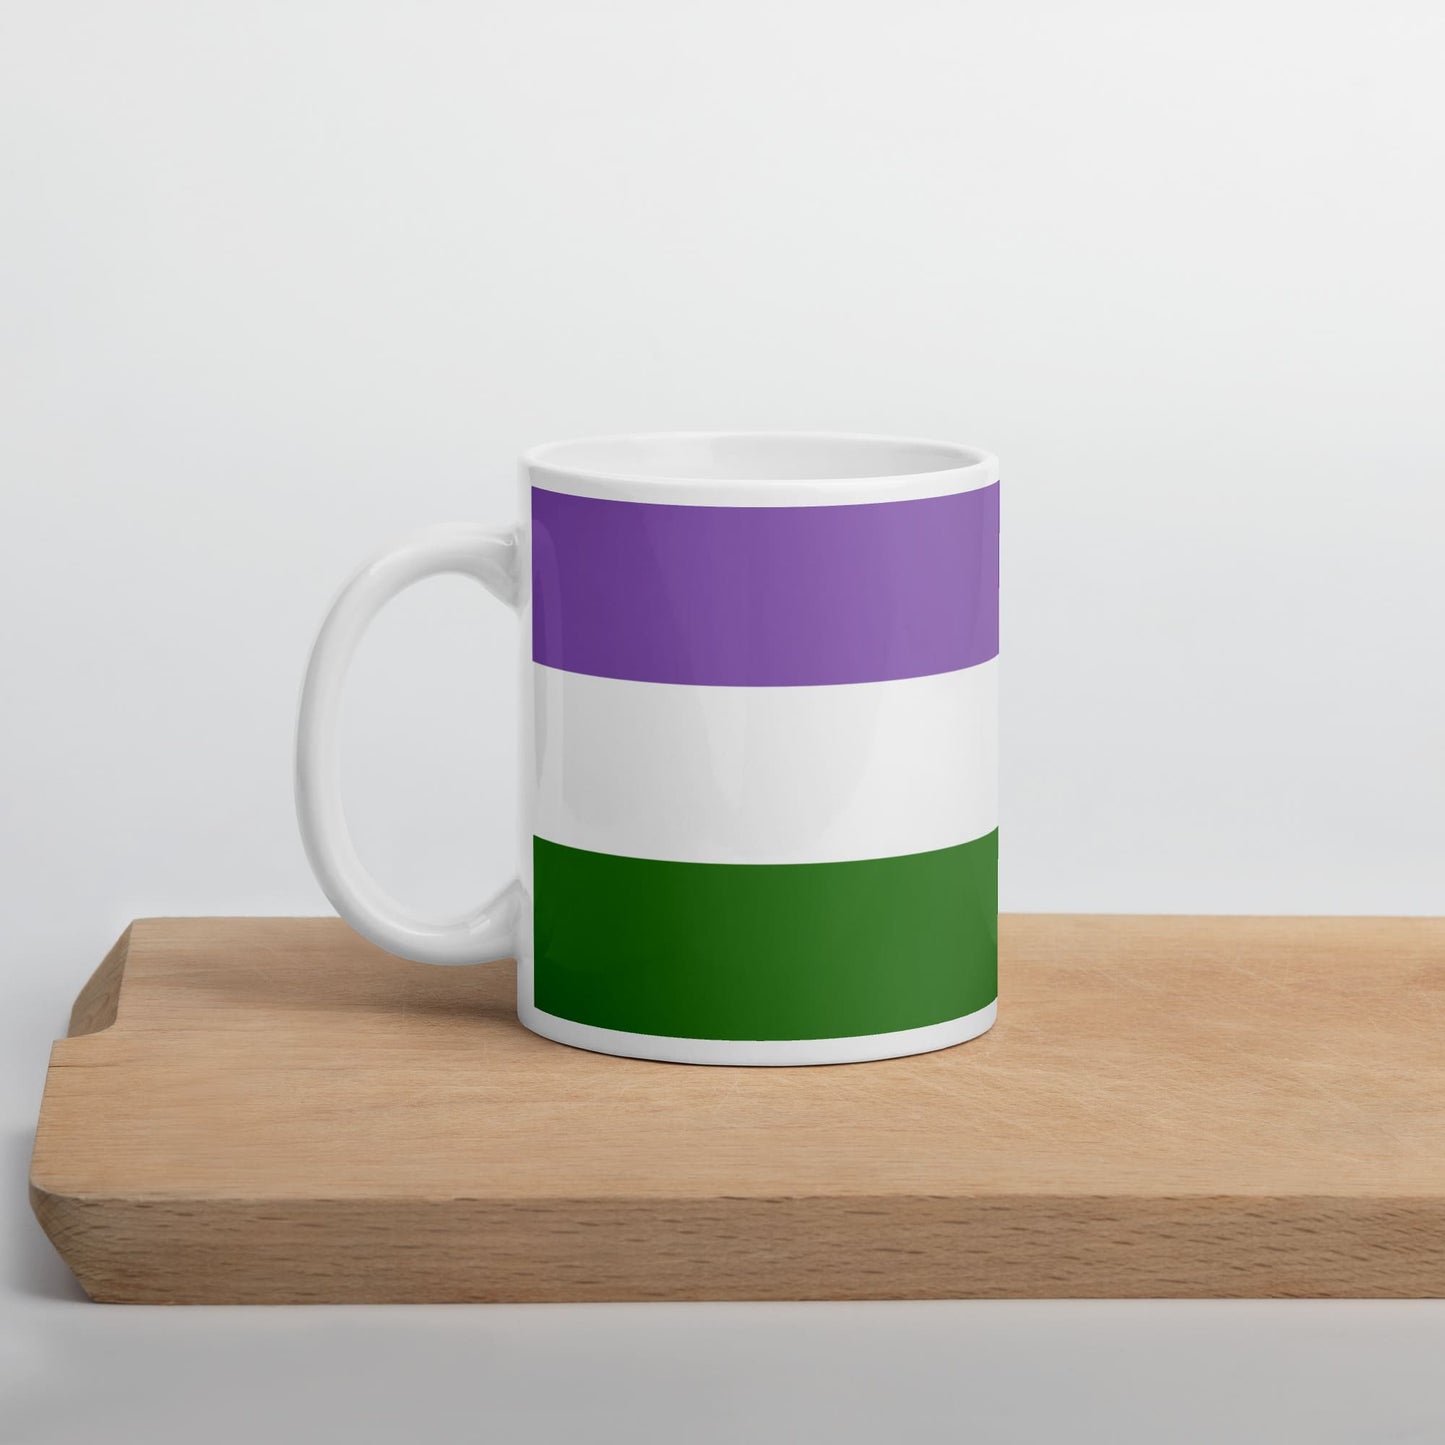 genderqueer coffee mug on table